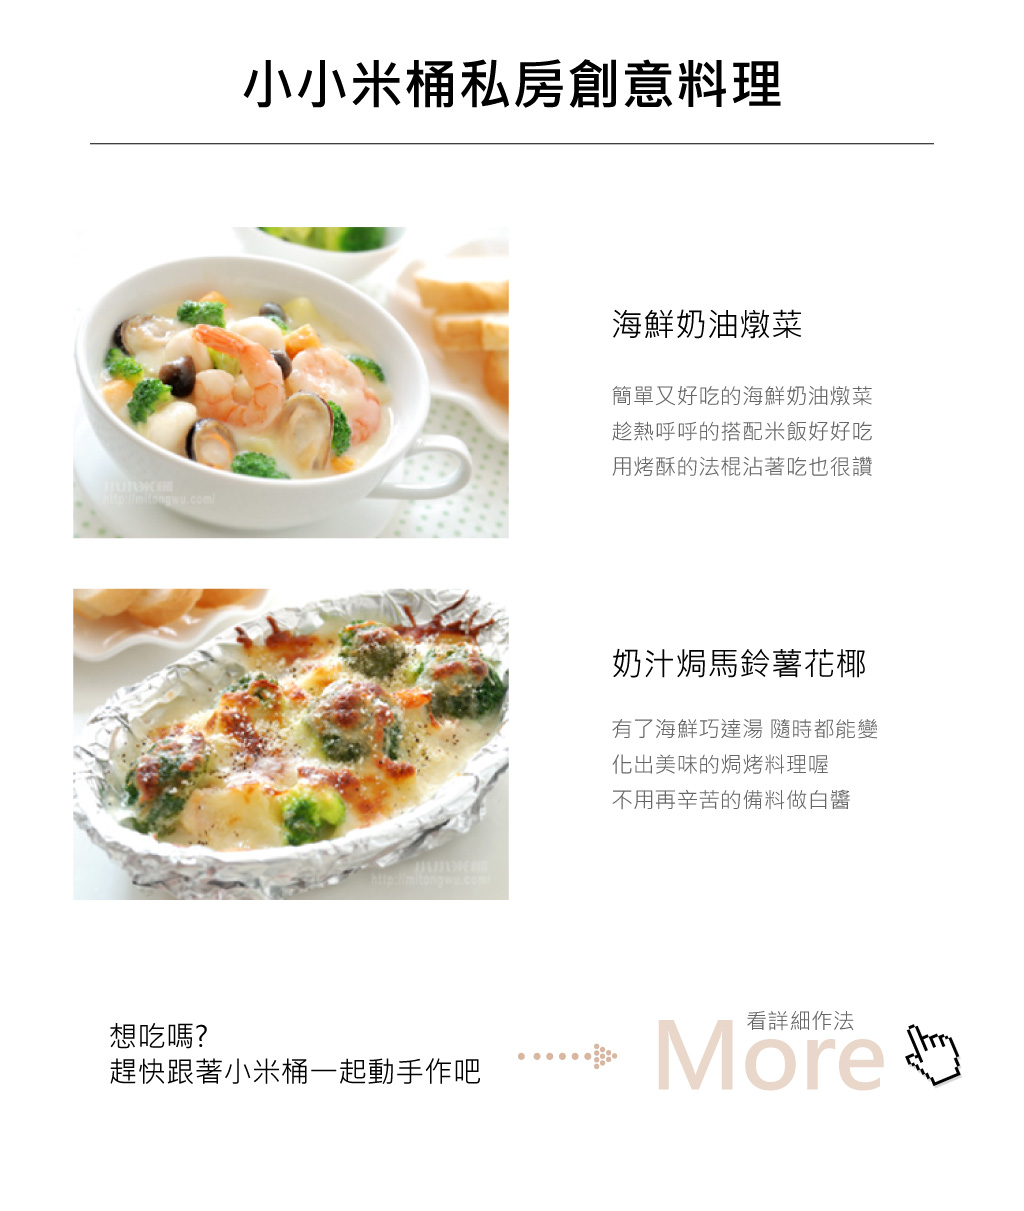 海鮮巧達湯-小小米桶料理介紹